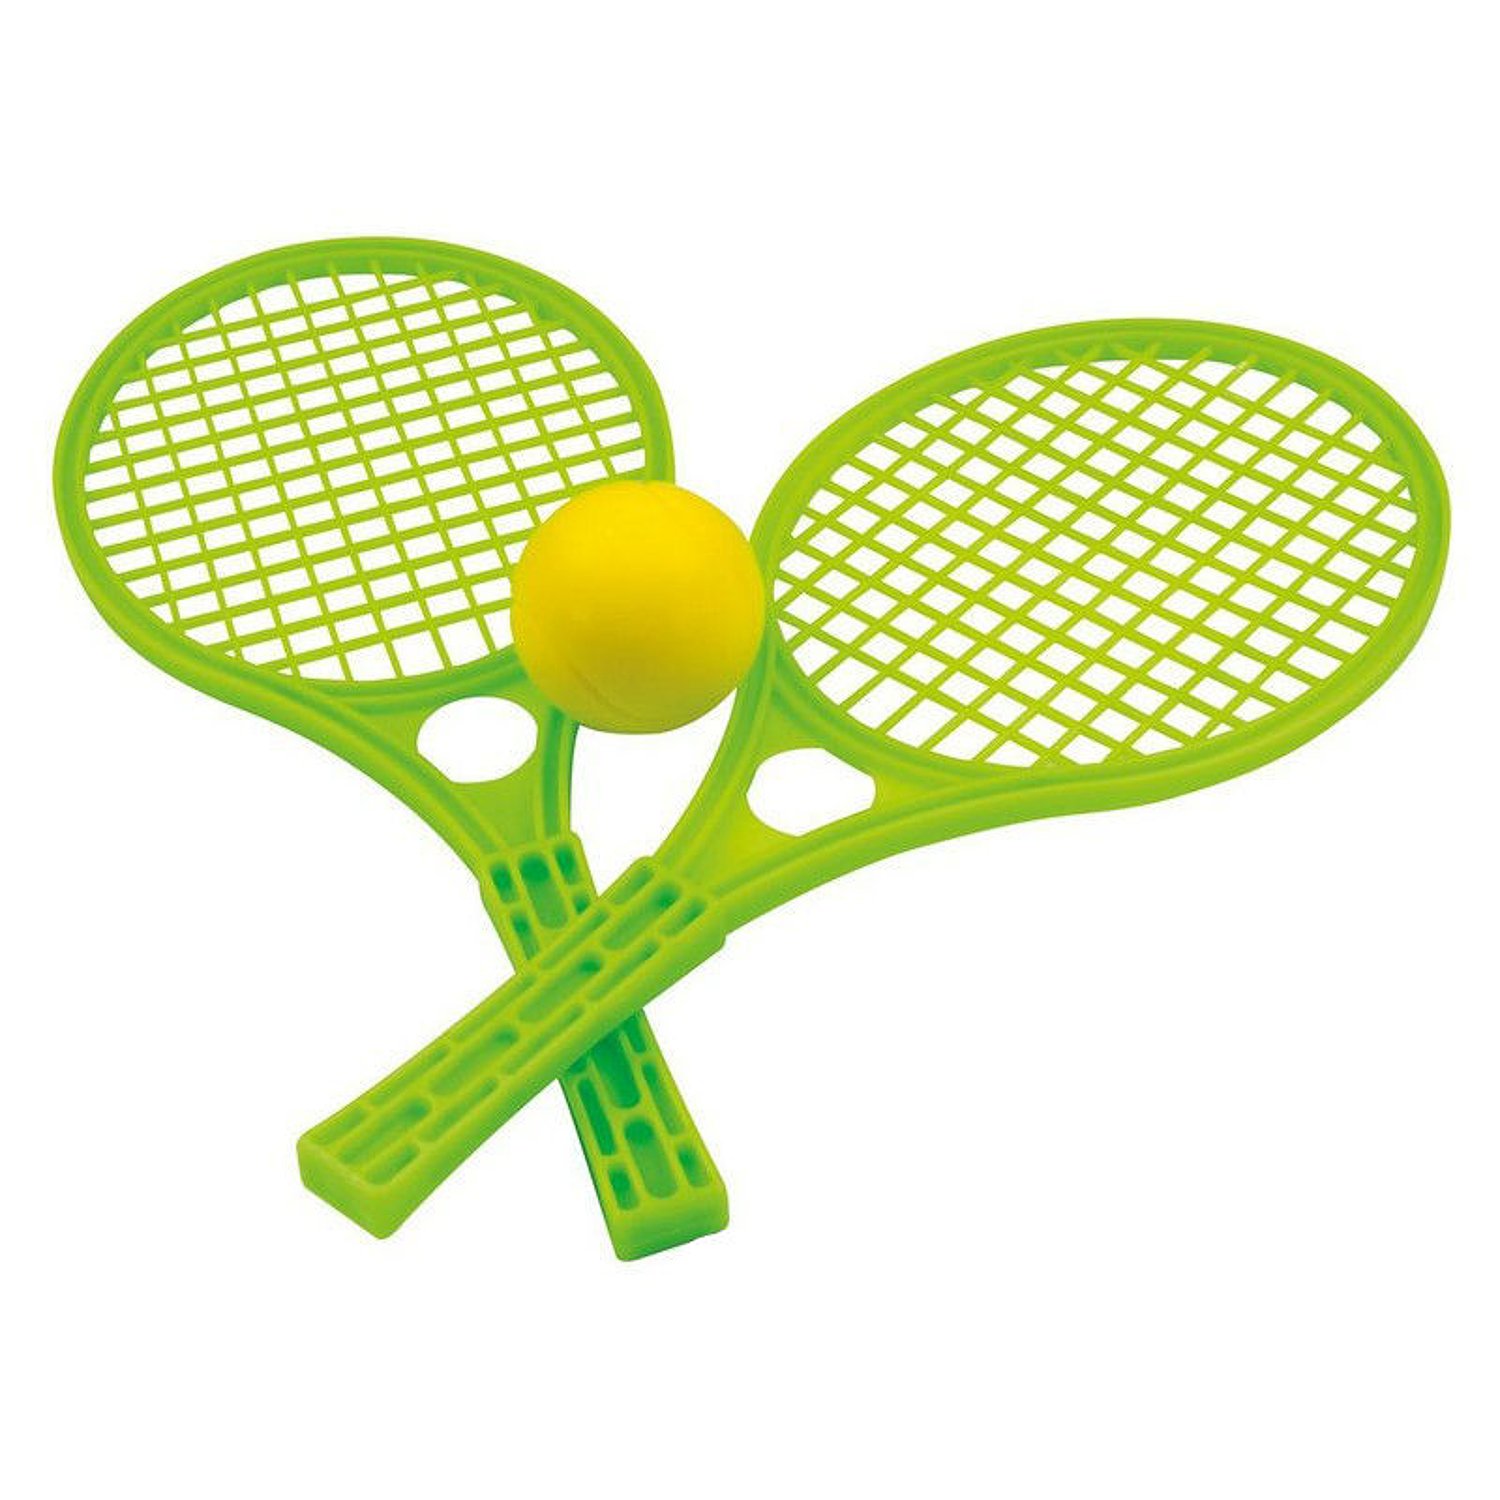 Ракетки тенниса детей. Набор для тенниса 15-5055-1. Теннисная и бадминтонная ракетка. Теннисные ракетки и мячик aj1607rk. Теннис пластиковые ракетки 68602.